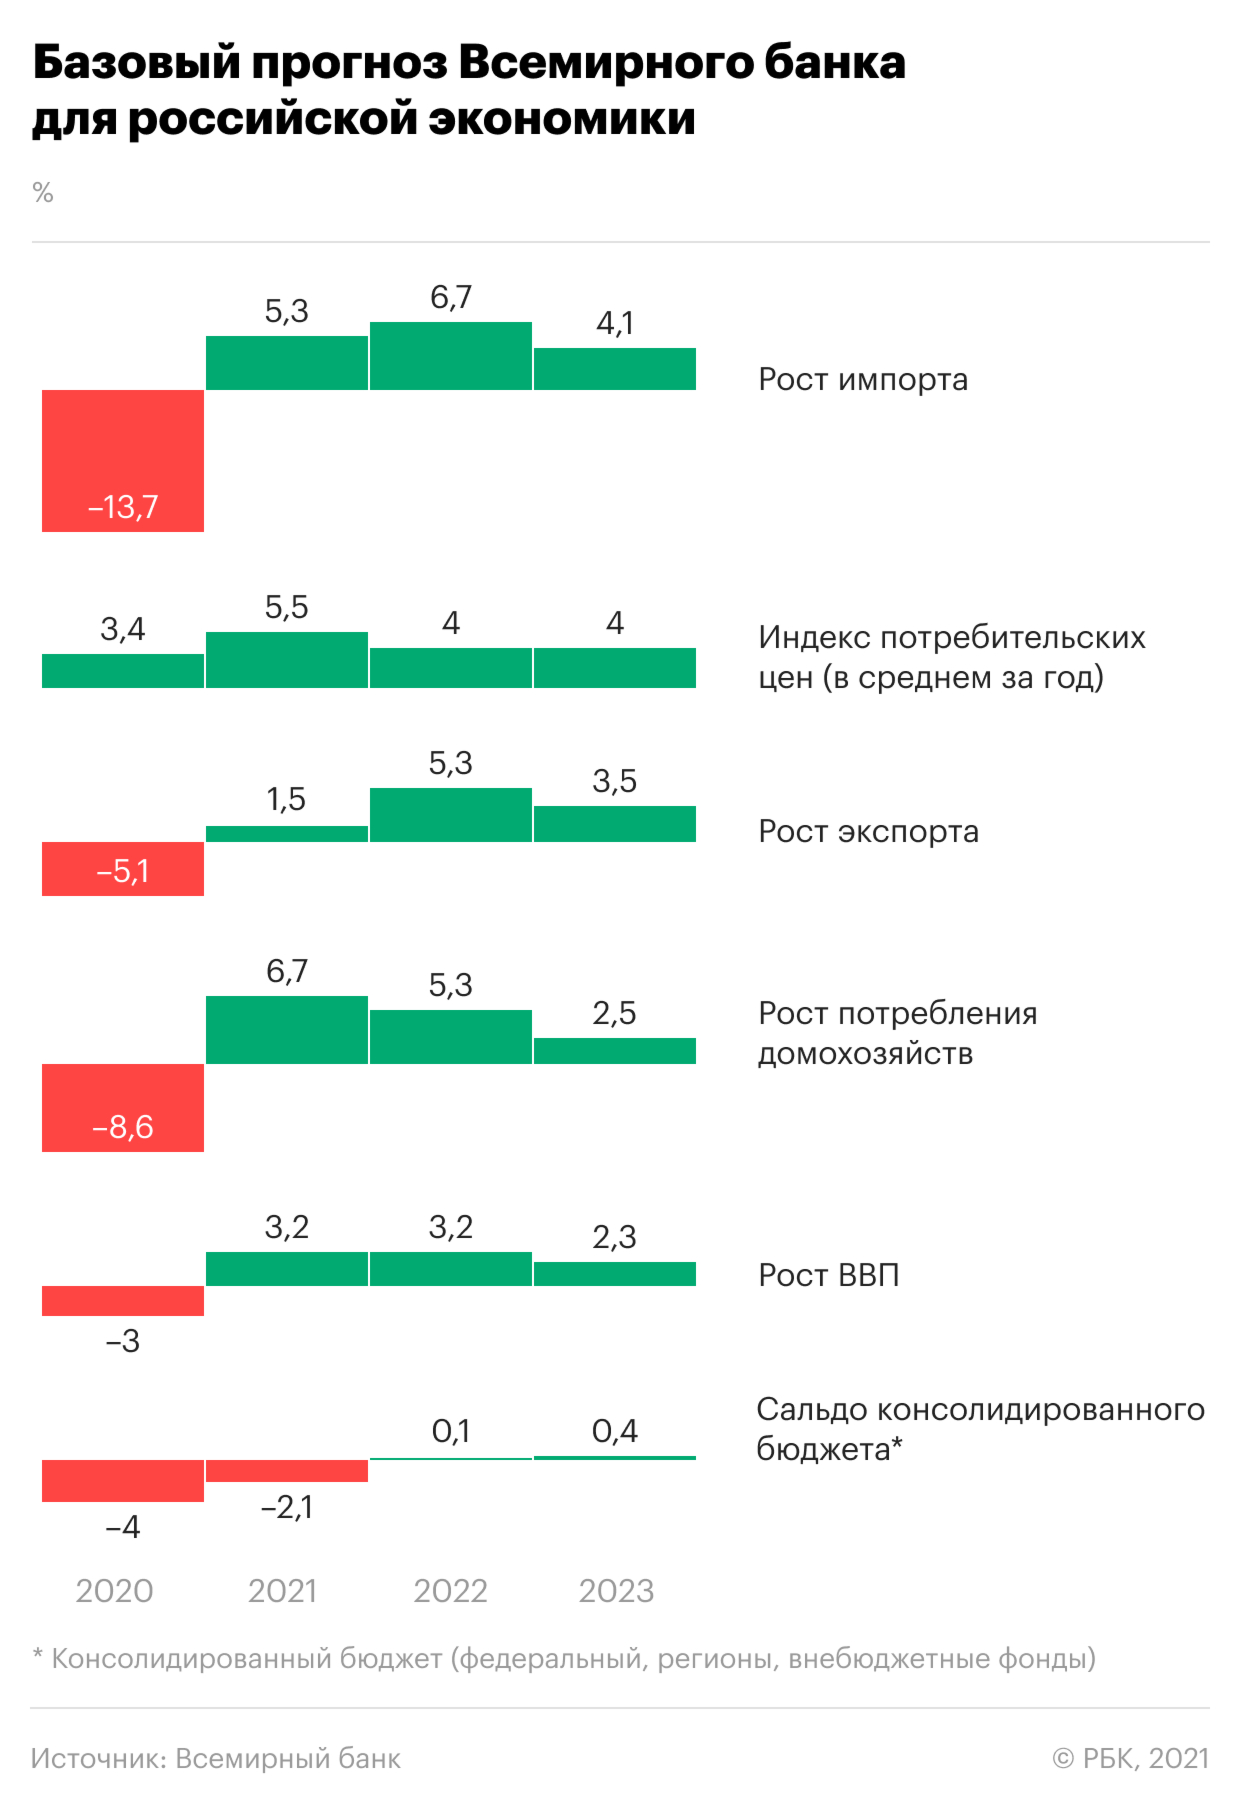 Какой ВВП и цены предсказал Всемирный банк для России. Инфографика